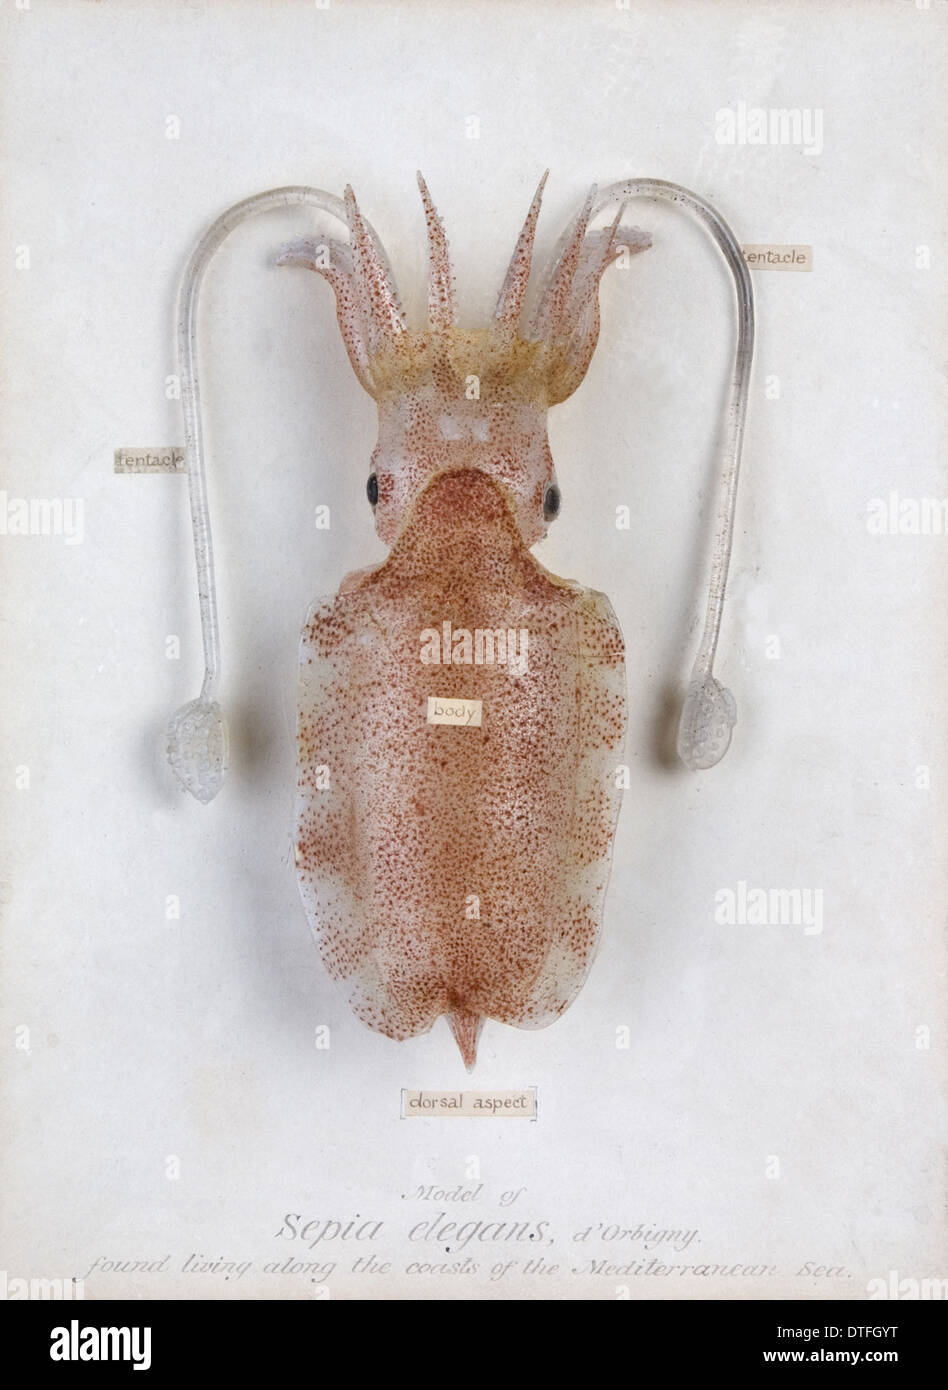 Sepia elegans, squid Stock Photo